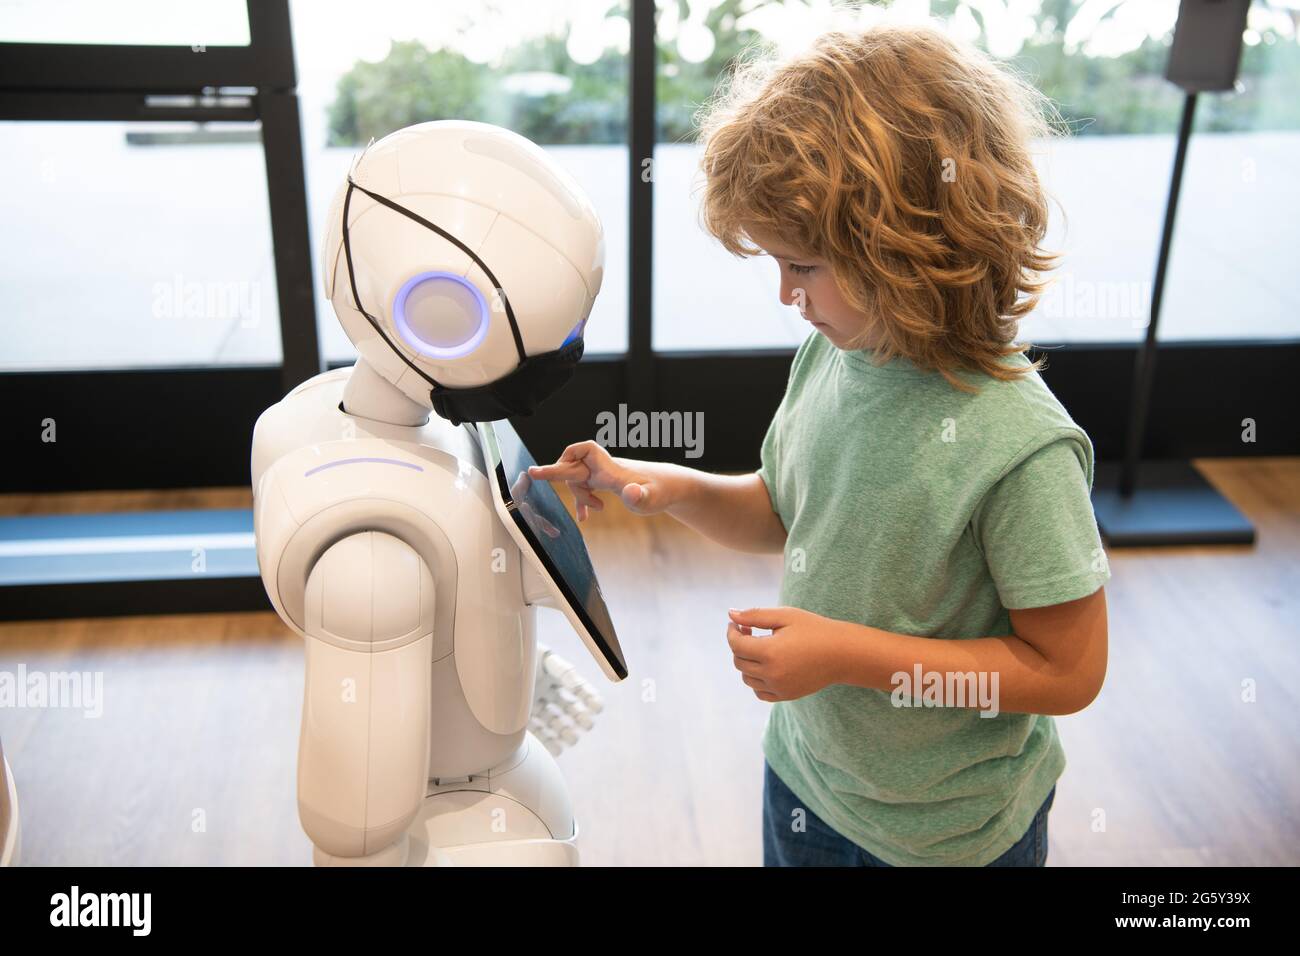 un piccolo ragazzo intelligente comunica con la tecnologia robot assistant per l'istruzione moderna, la robotica Foto Stock